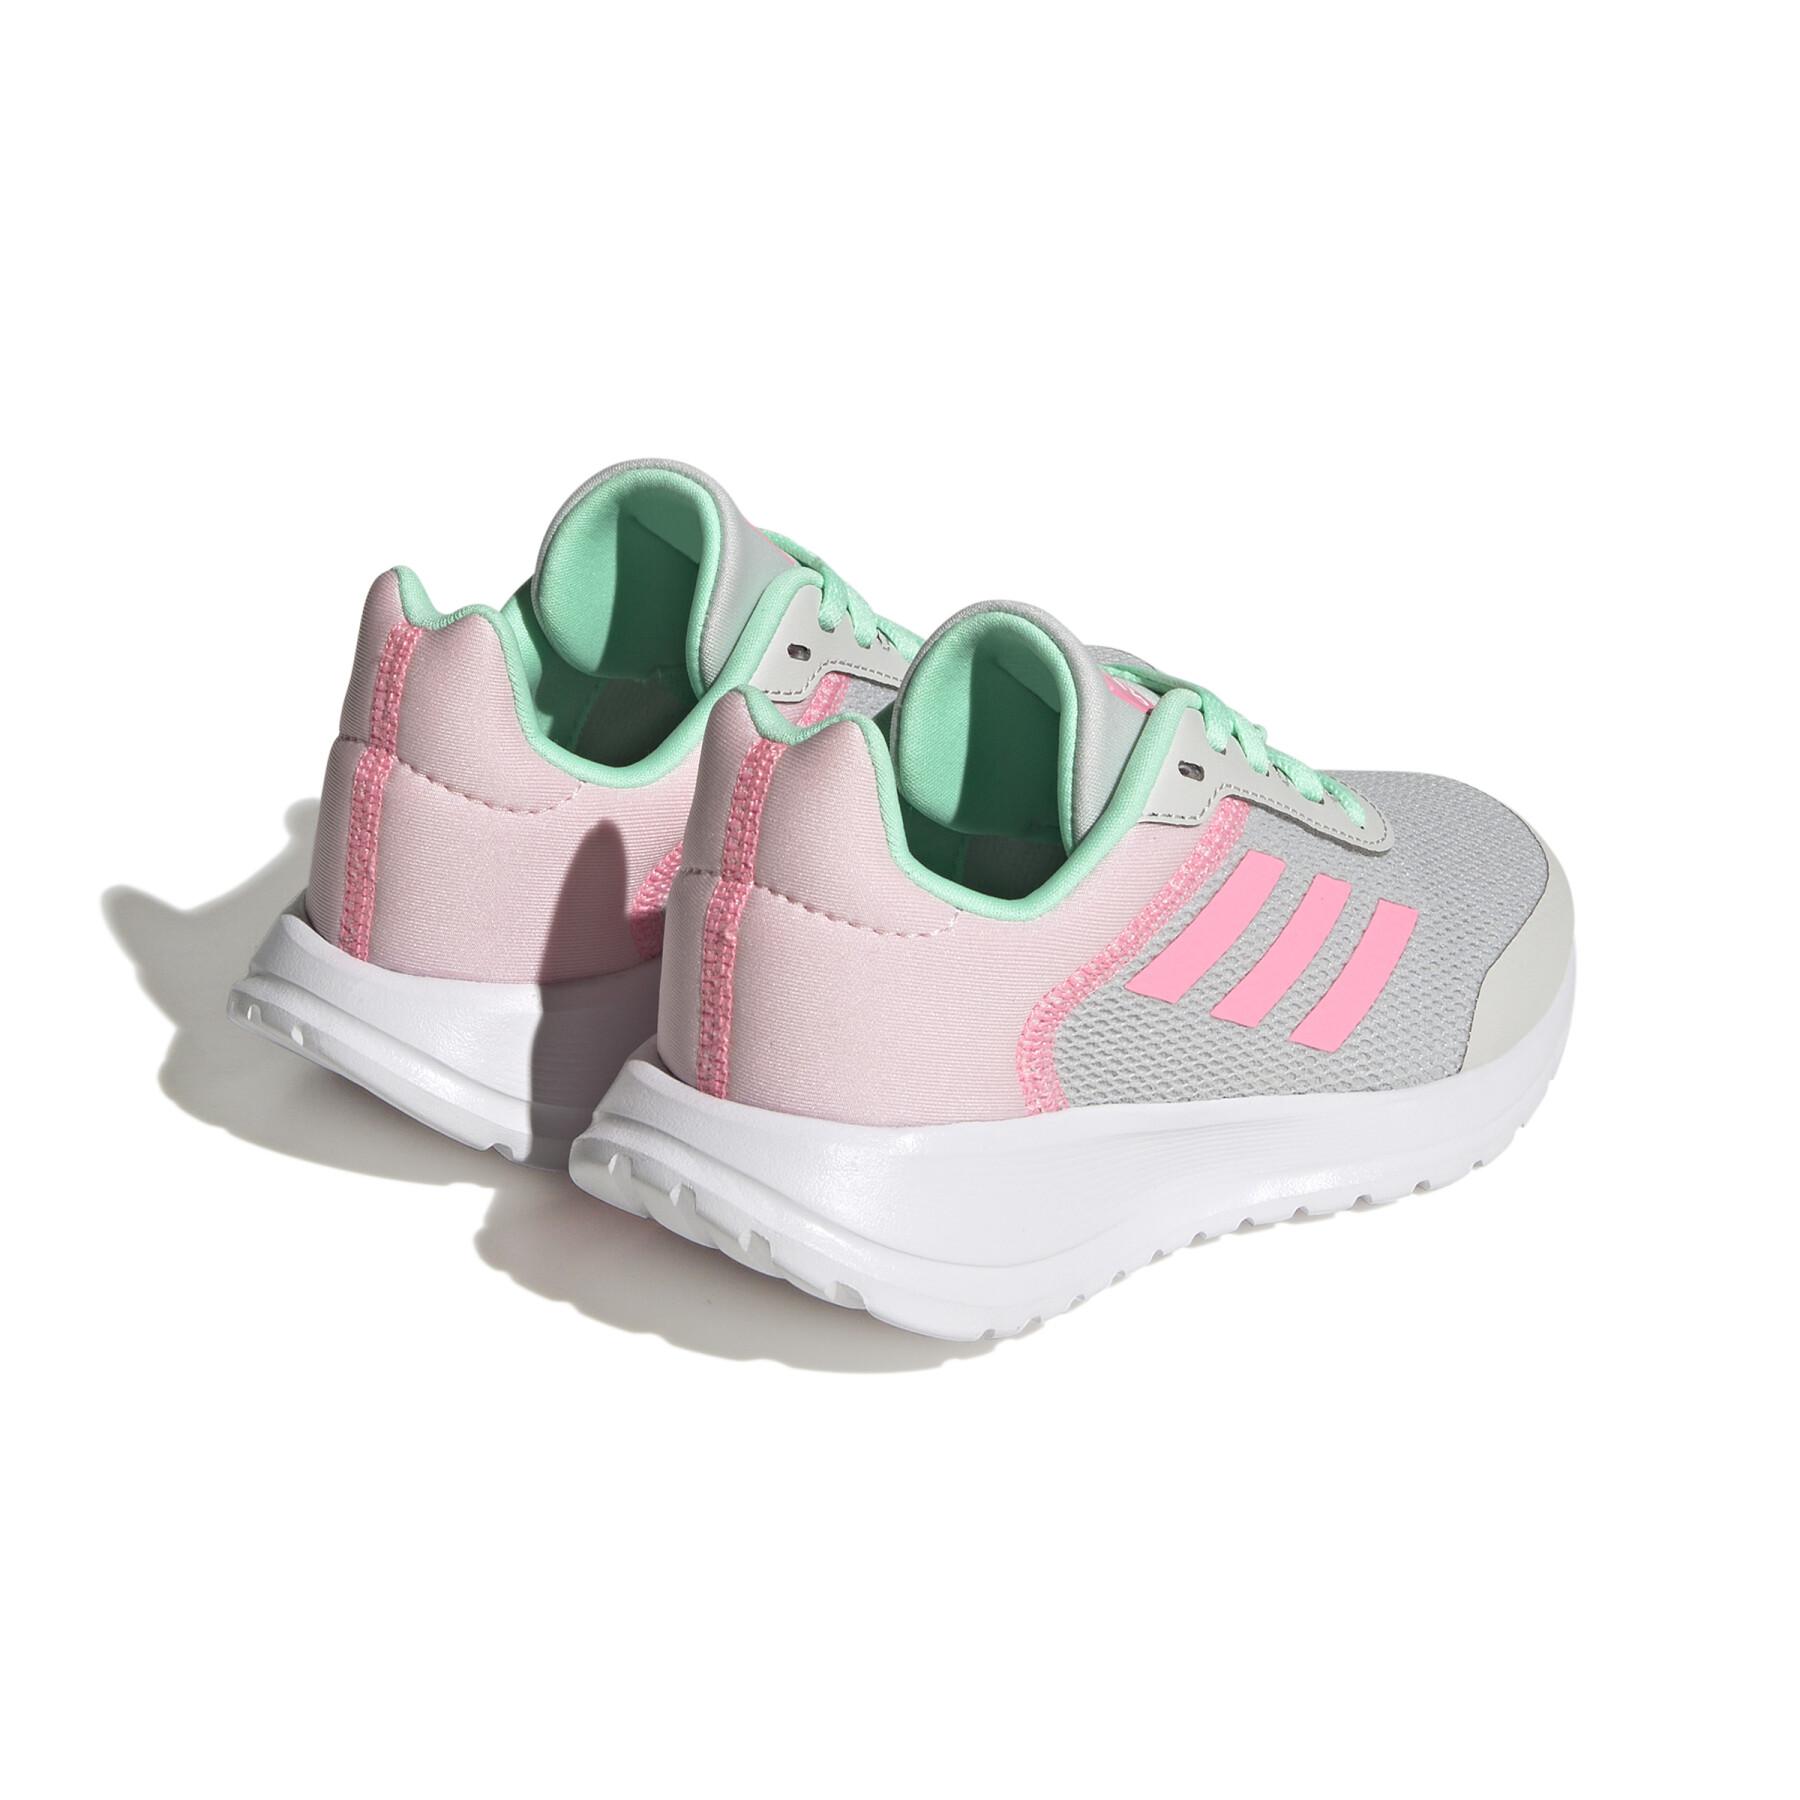 Chaussures de running enfant adidas Tensaur